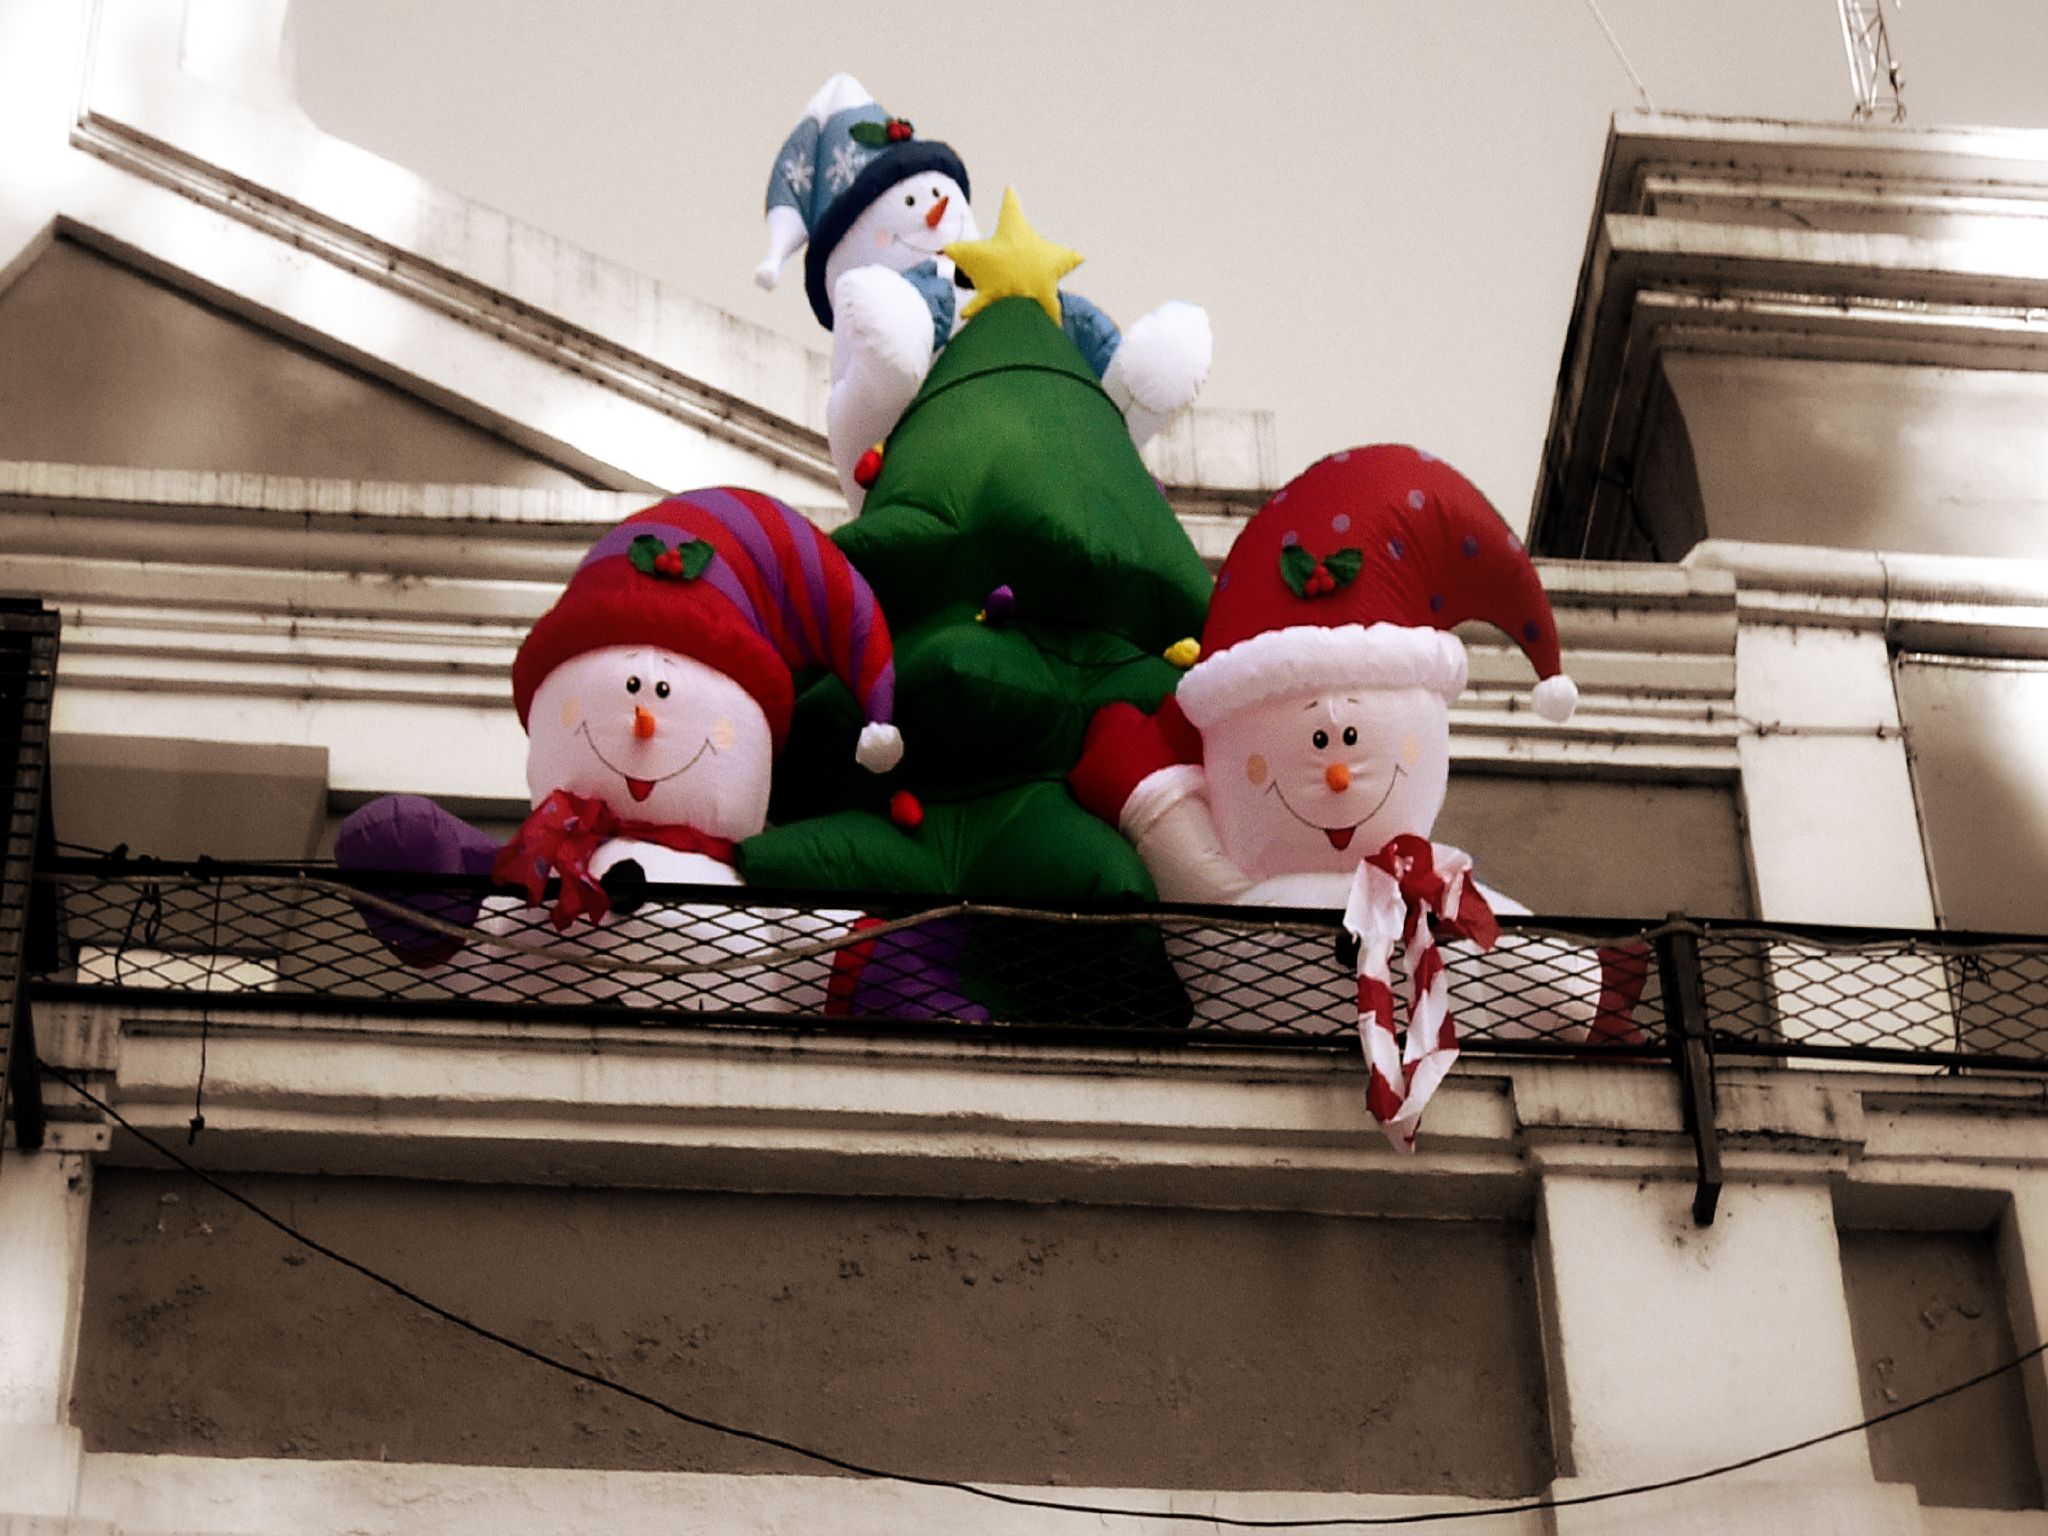 Fondos hd muñecos de nieve inflable en balcon